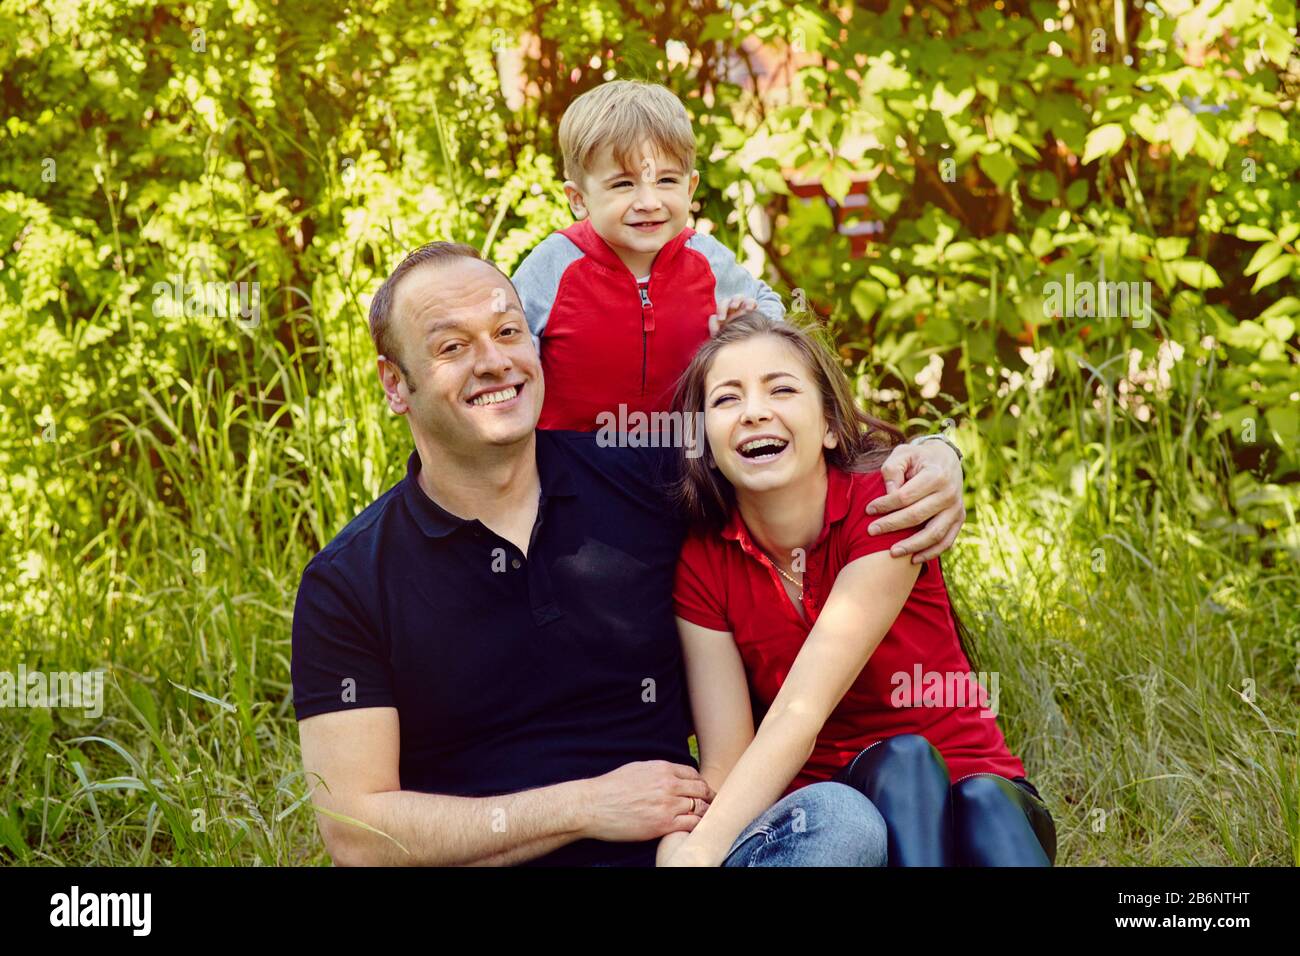 portrait extérieur d'une famille heureuse. Maman, papa et enfant. Banque D'Images